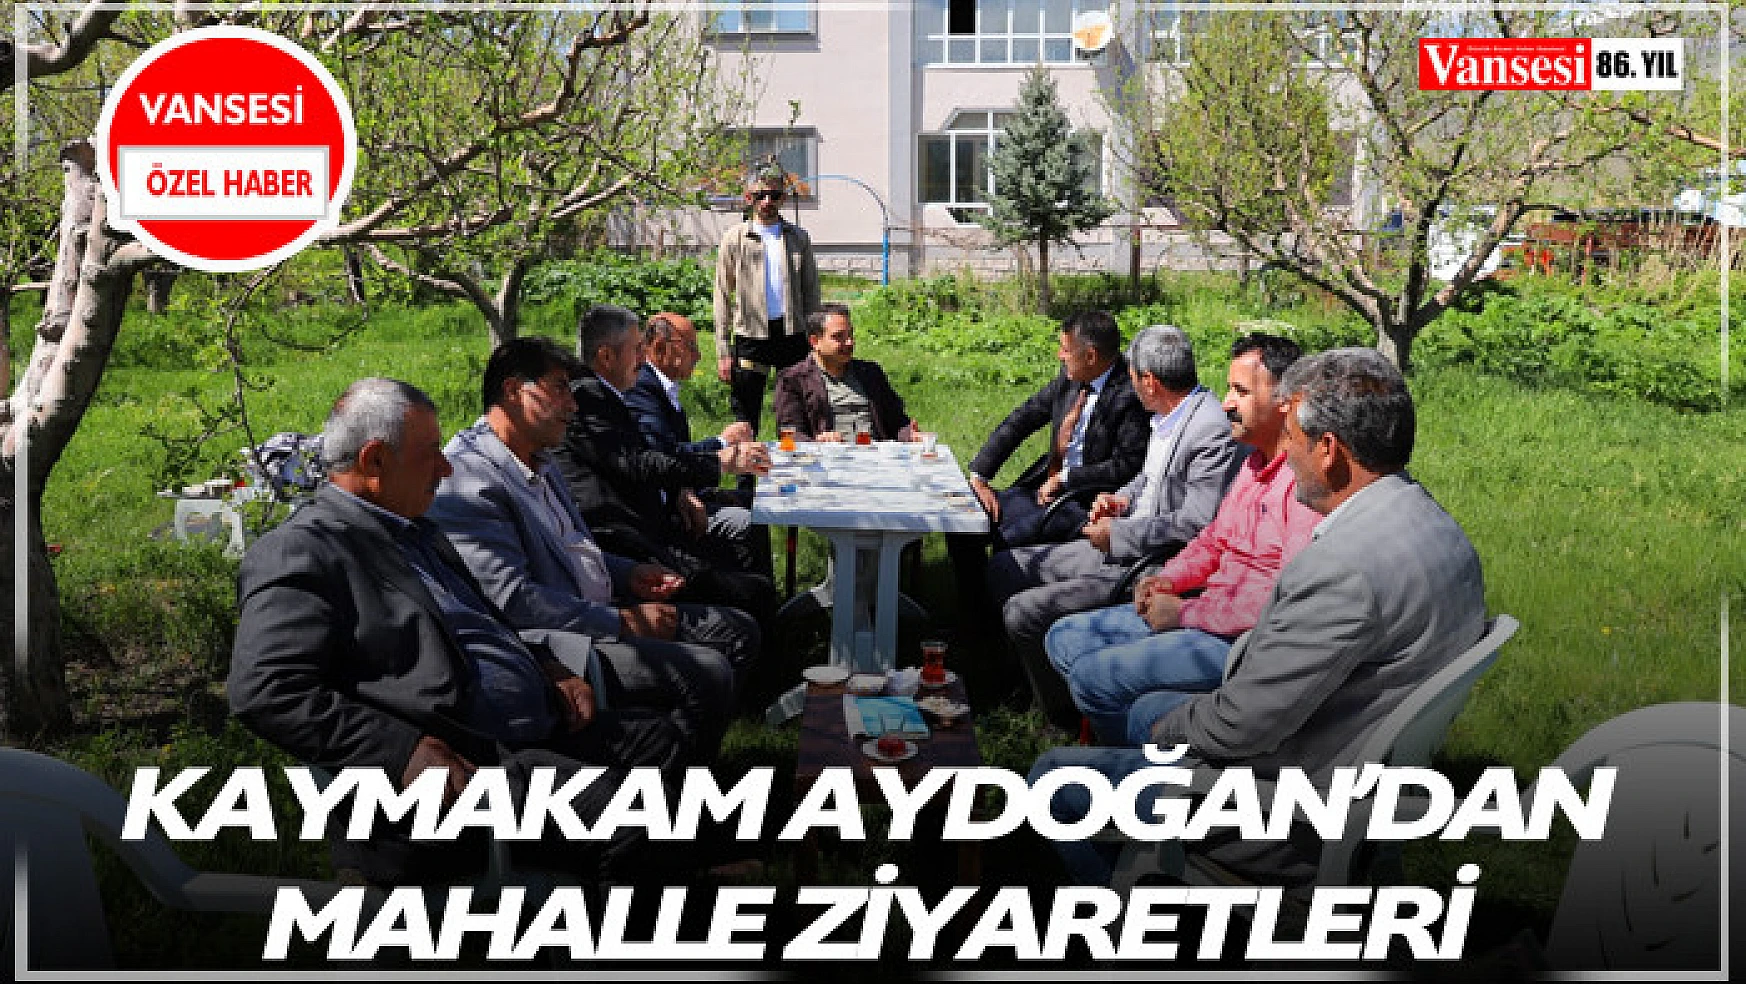 Kaymakam Aydoğan'dan mahalle ziyaretleri